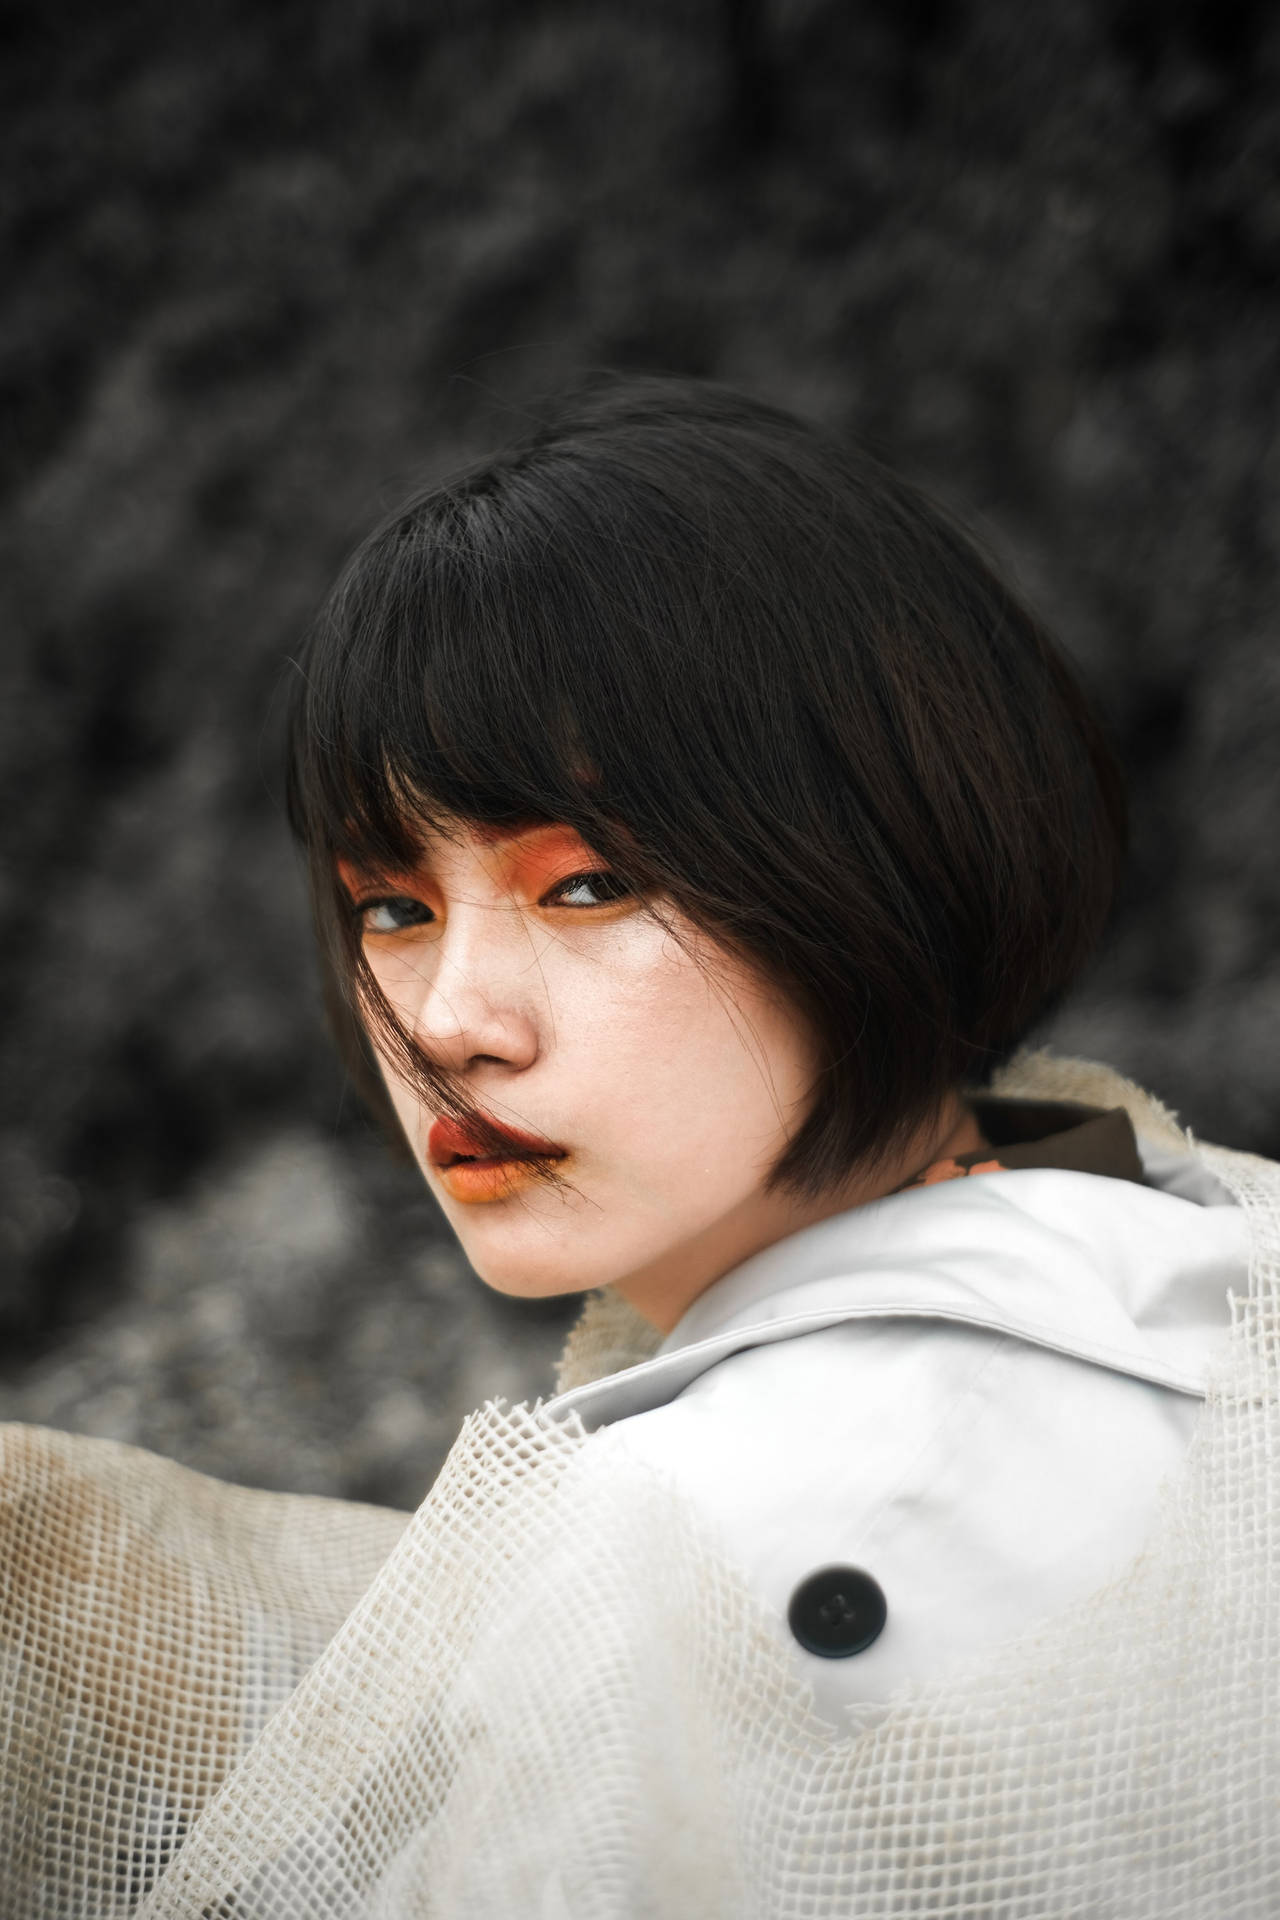 Asian Woman With Orange Makeup